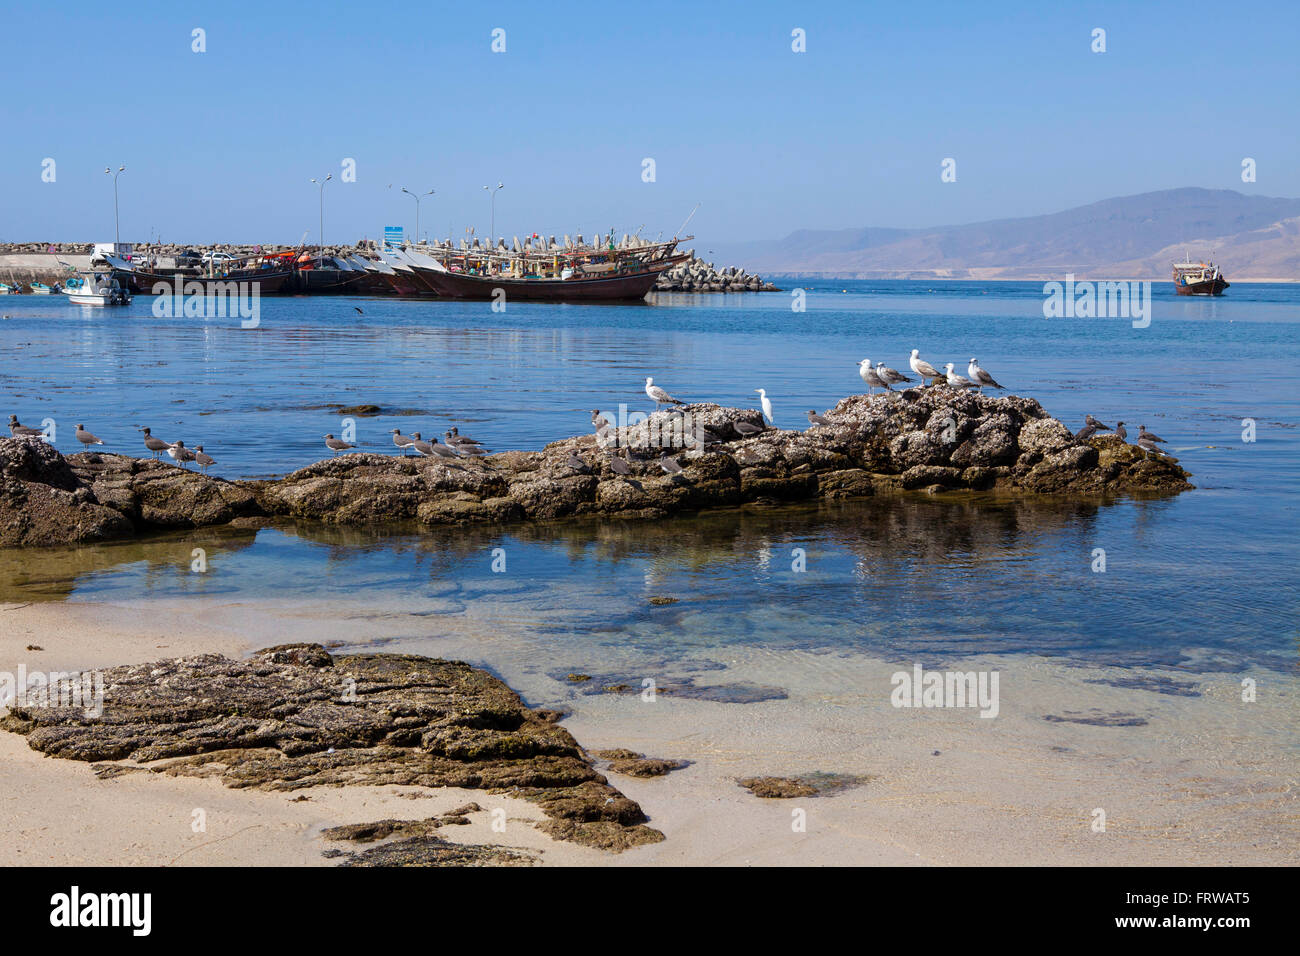 Fishing boats in Mirbat, Dhofar region, Oman. Stock Photo